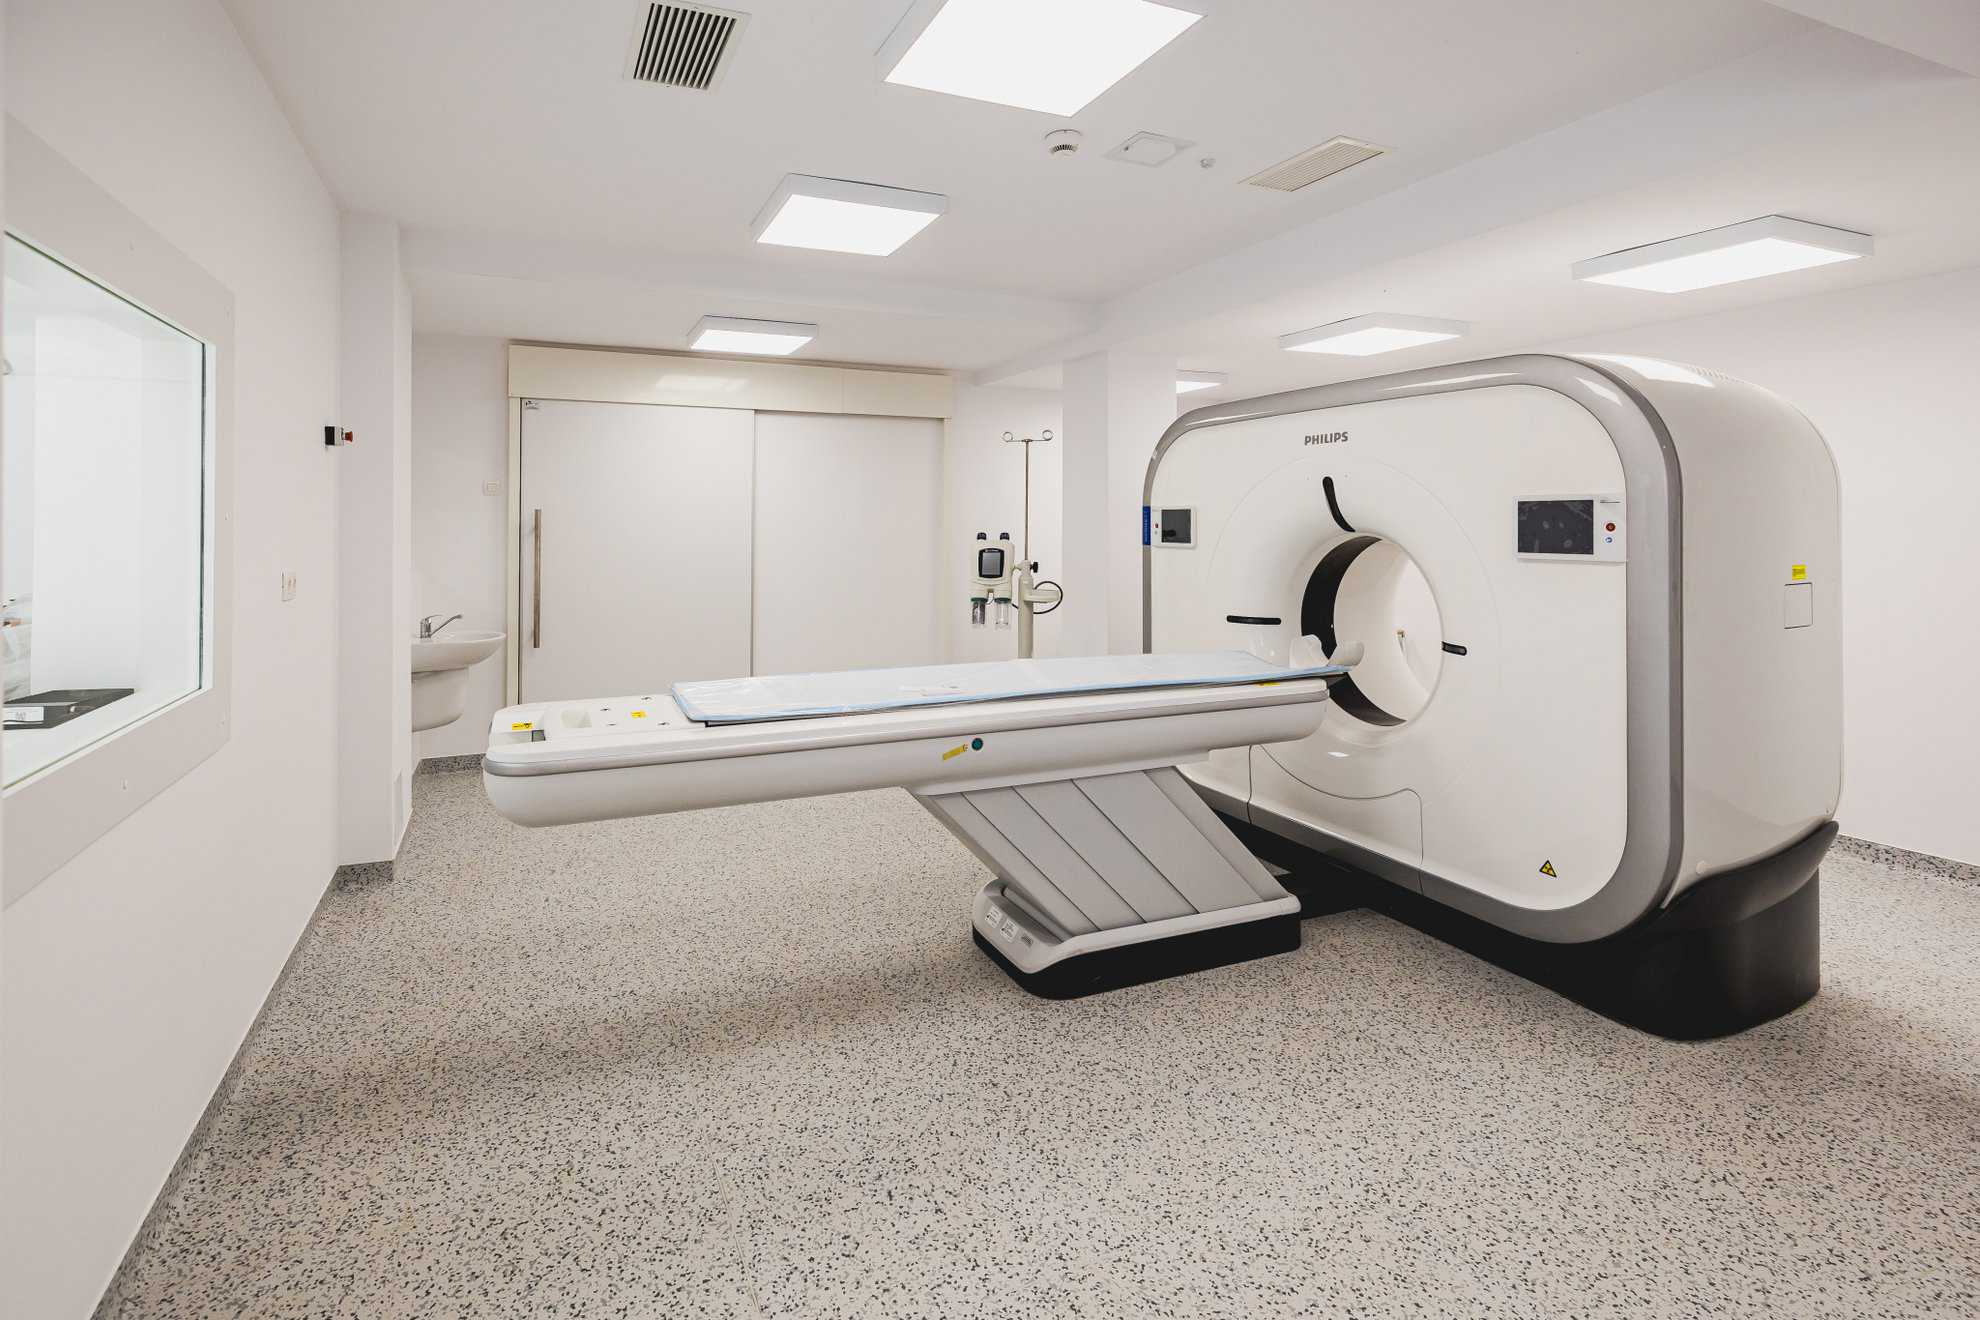 noua policlinică a spitalului orășenesc din cisnădie, inaugurată joi. investiția a costat 11,2 milioane lei (foto)